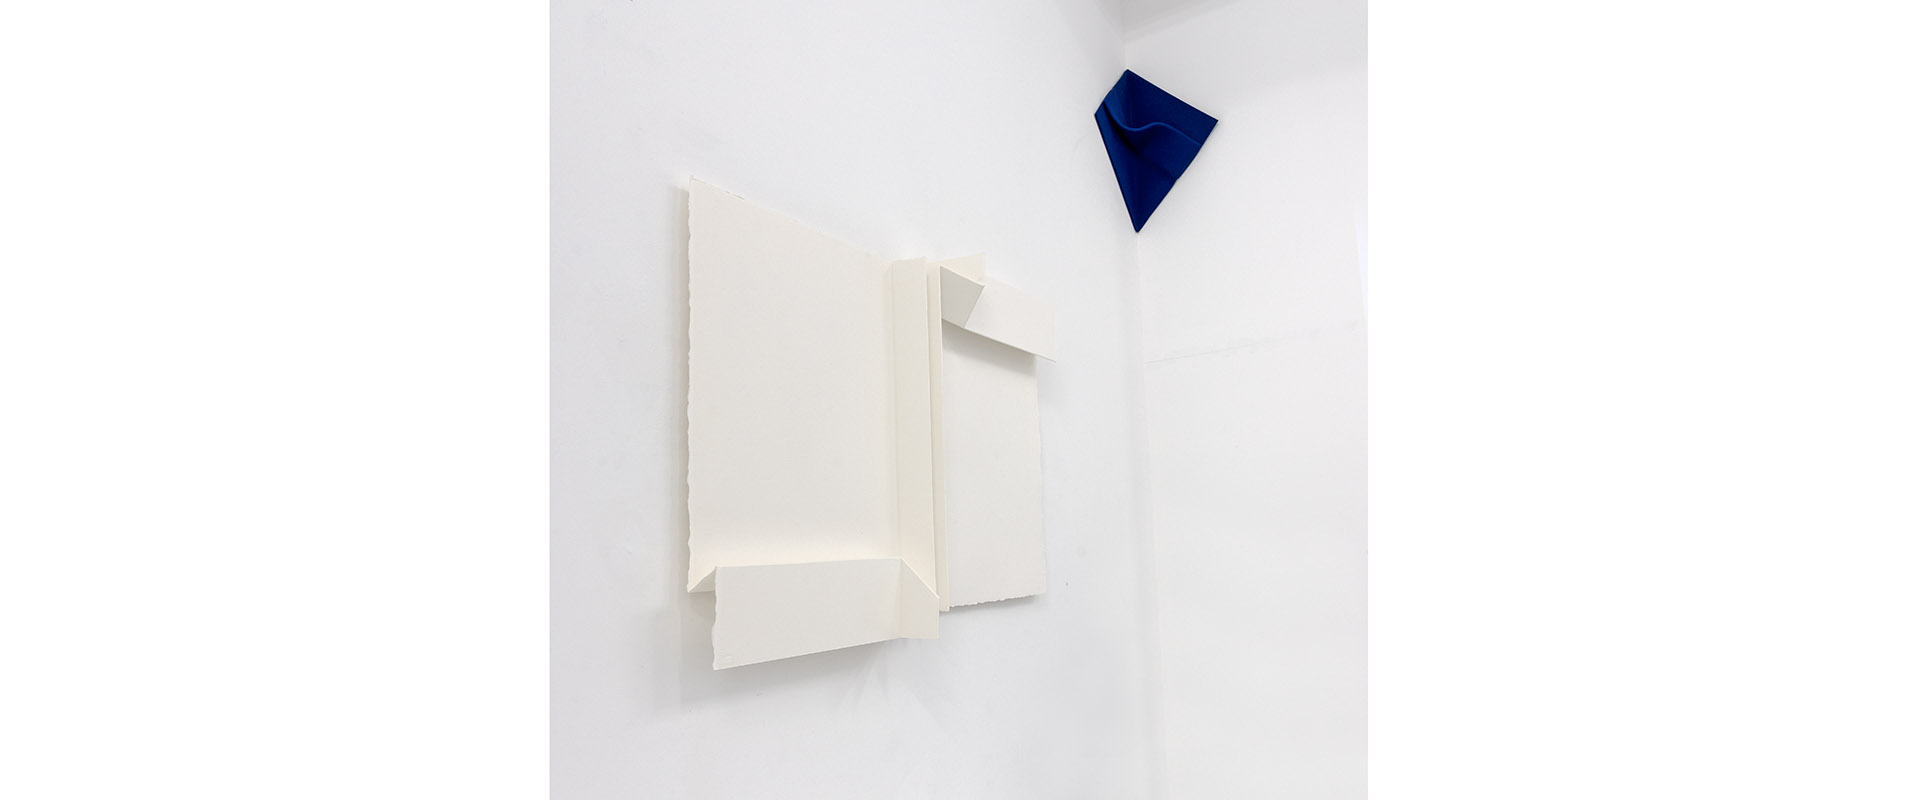 Ausstellungsansicht "Peter Weber - Struktur und Faltung", Galerie Renate Bender 2019